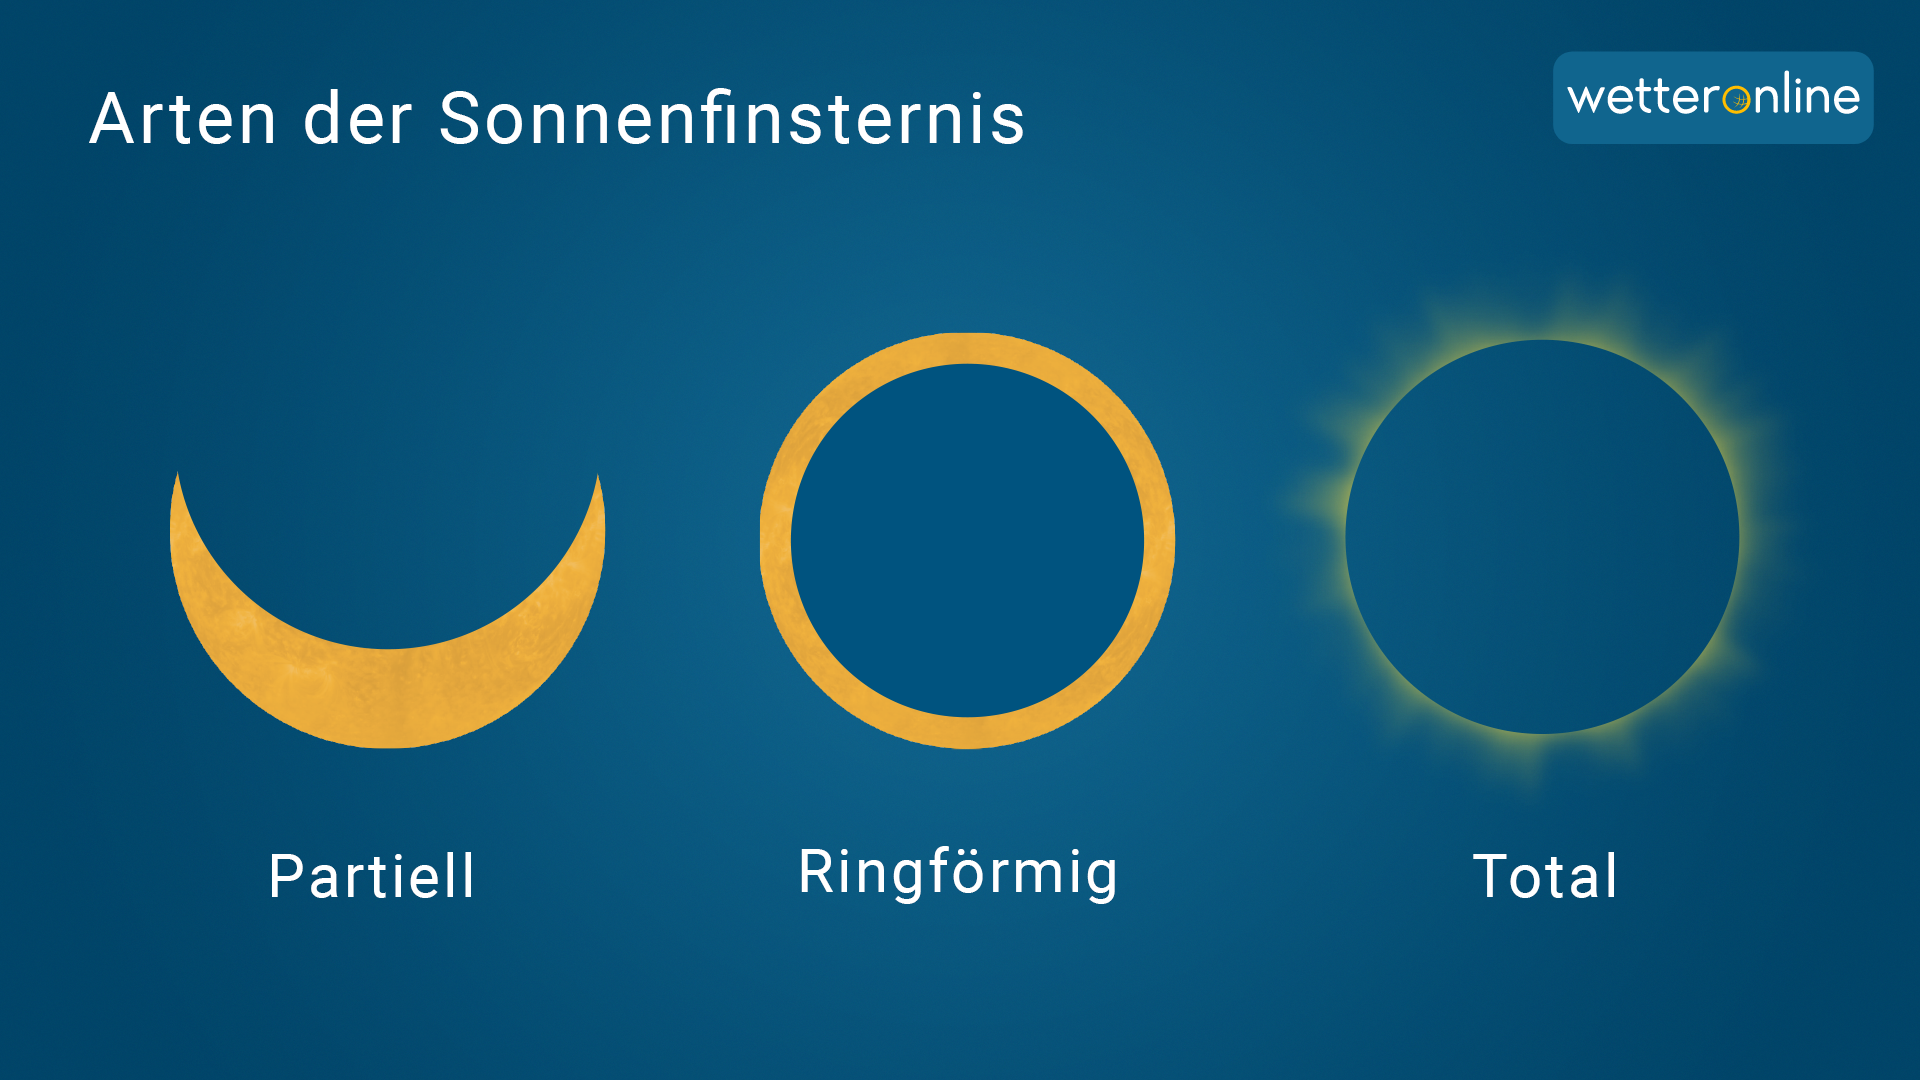 Arten der Sonnenfinsternis: partiell, ringförmig und total